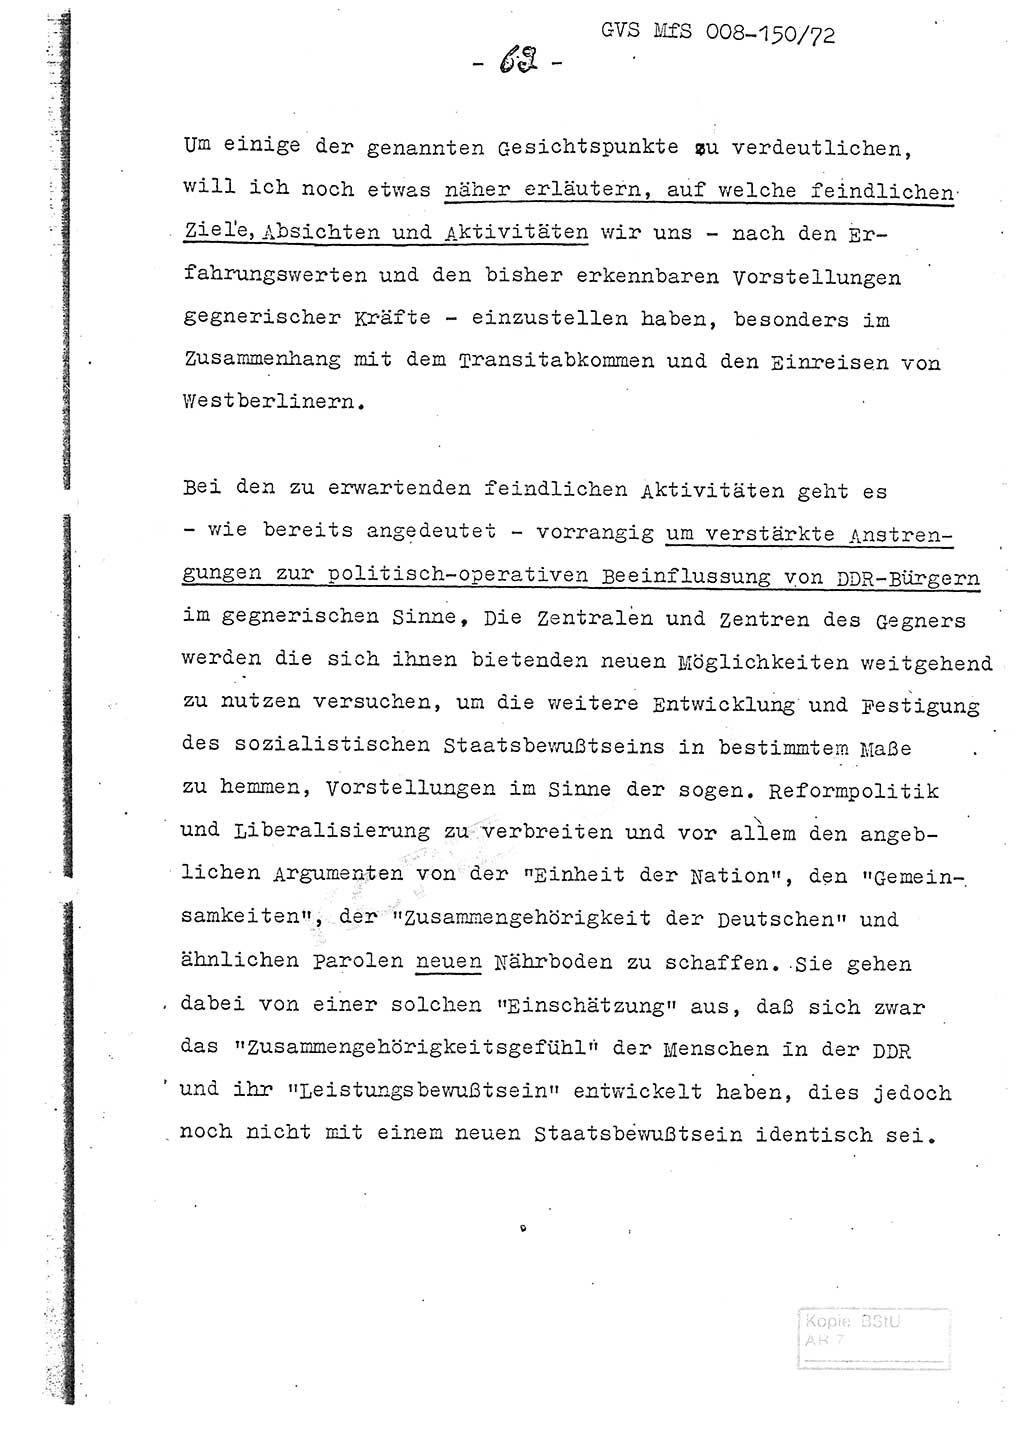 Referat (Entwurf) des Genossen Minister (Generaloberst Erich Mielke) auf der Dienstkonferenz 1972, Ministerium für Staatssicherheit (MfS) [Deutsche Demokratische Republik (DDR)], Der Minister, Geheime Verschlußsache (GVS) 008-150/72, Berlin 25.2.1972, Seite 62 (Ref. Entw. DK MfS DDR Min. GVS 008-150/72 1972, S. 62)